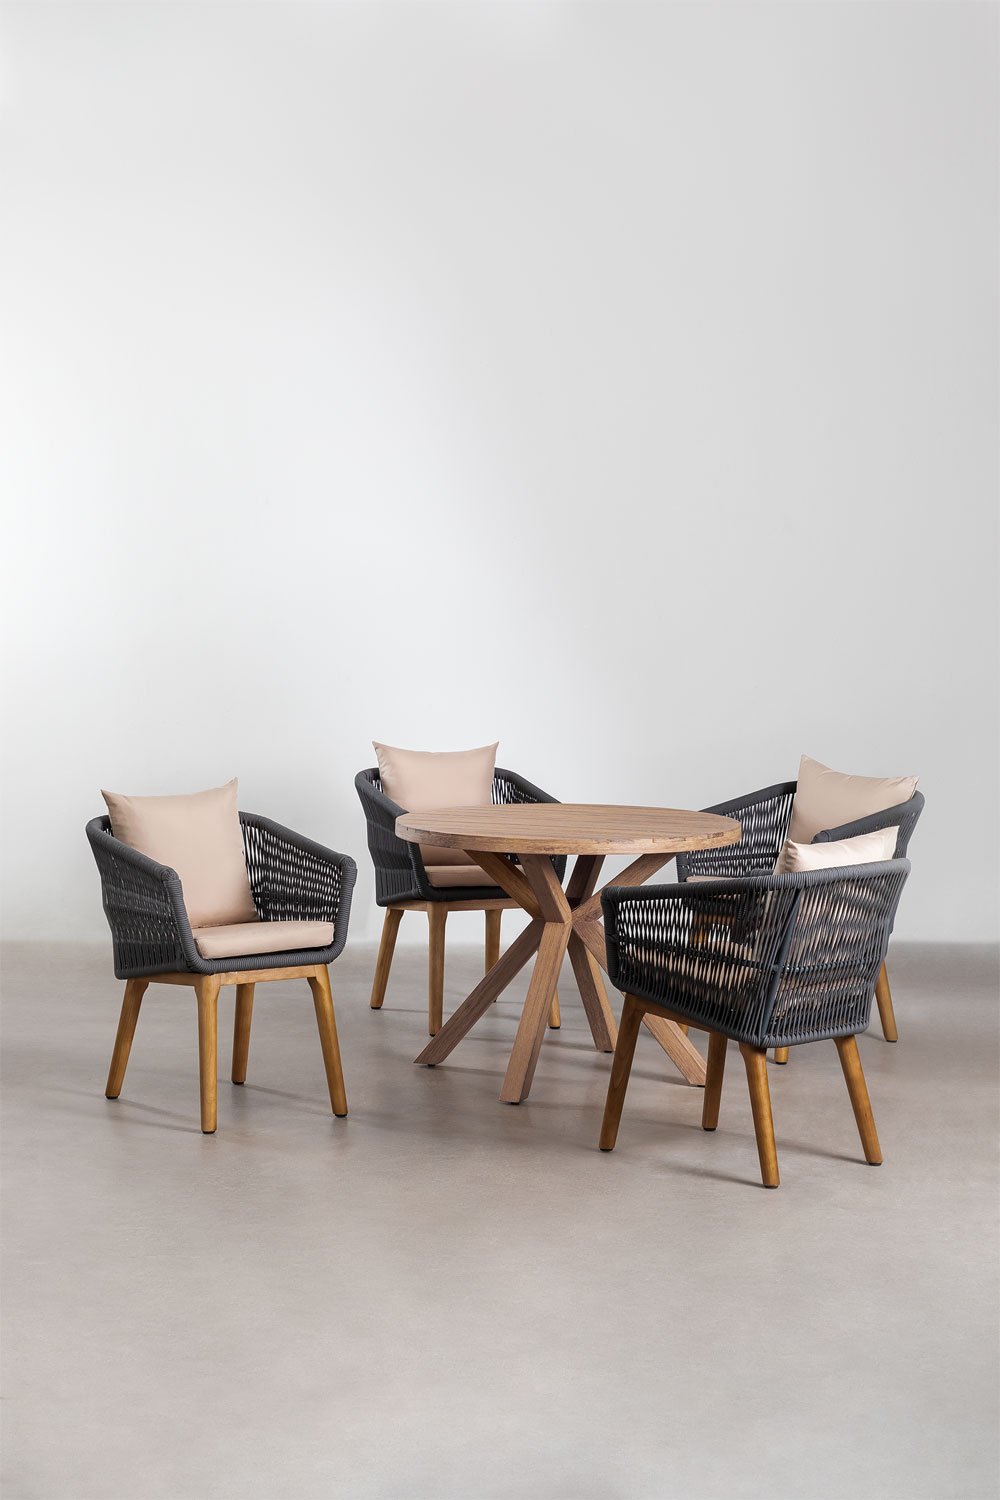 Set van ronde houten tafel (Ø100 cm) Naele en 4 Barker eetkamerstoelen, galerij beeld 1